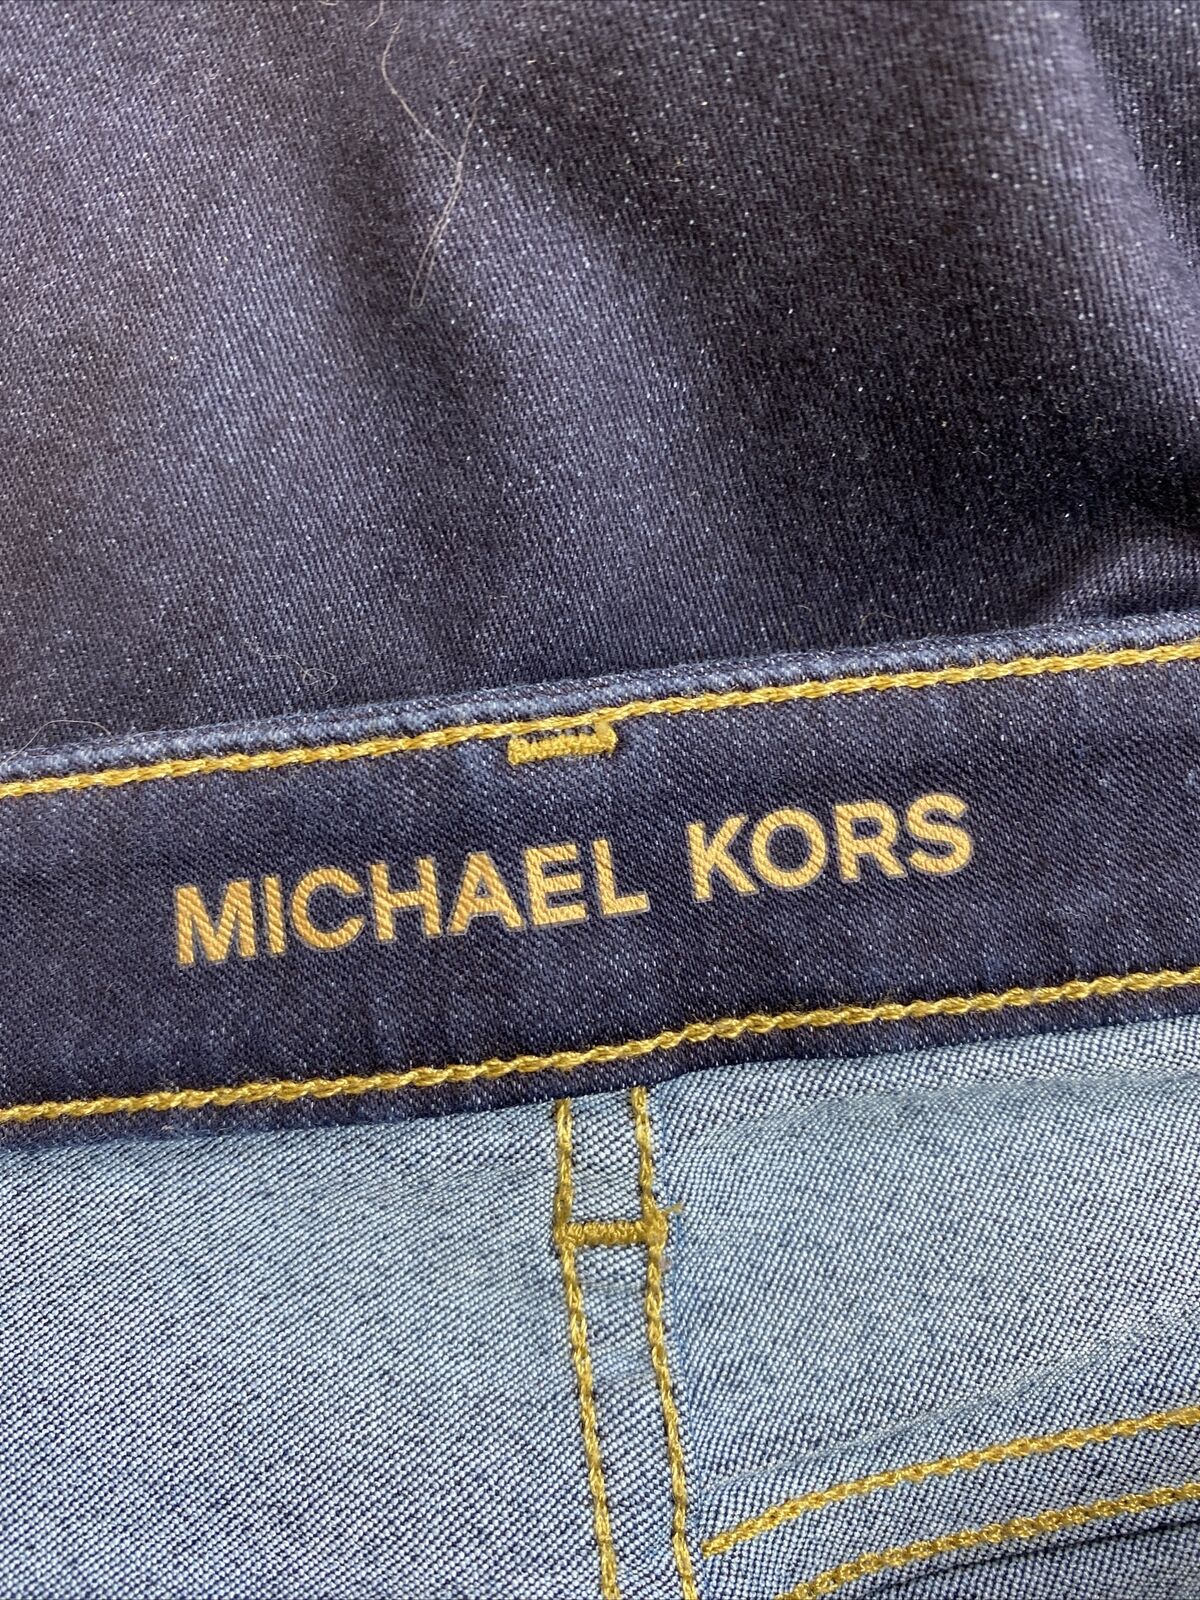 Michael Kors Women's Dark Wash Izzy Skinny Stretch Jeans - 4